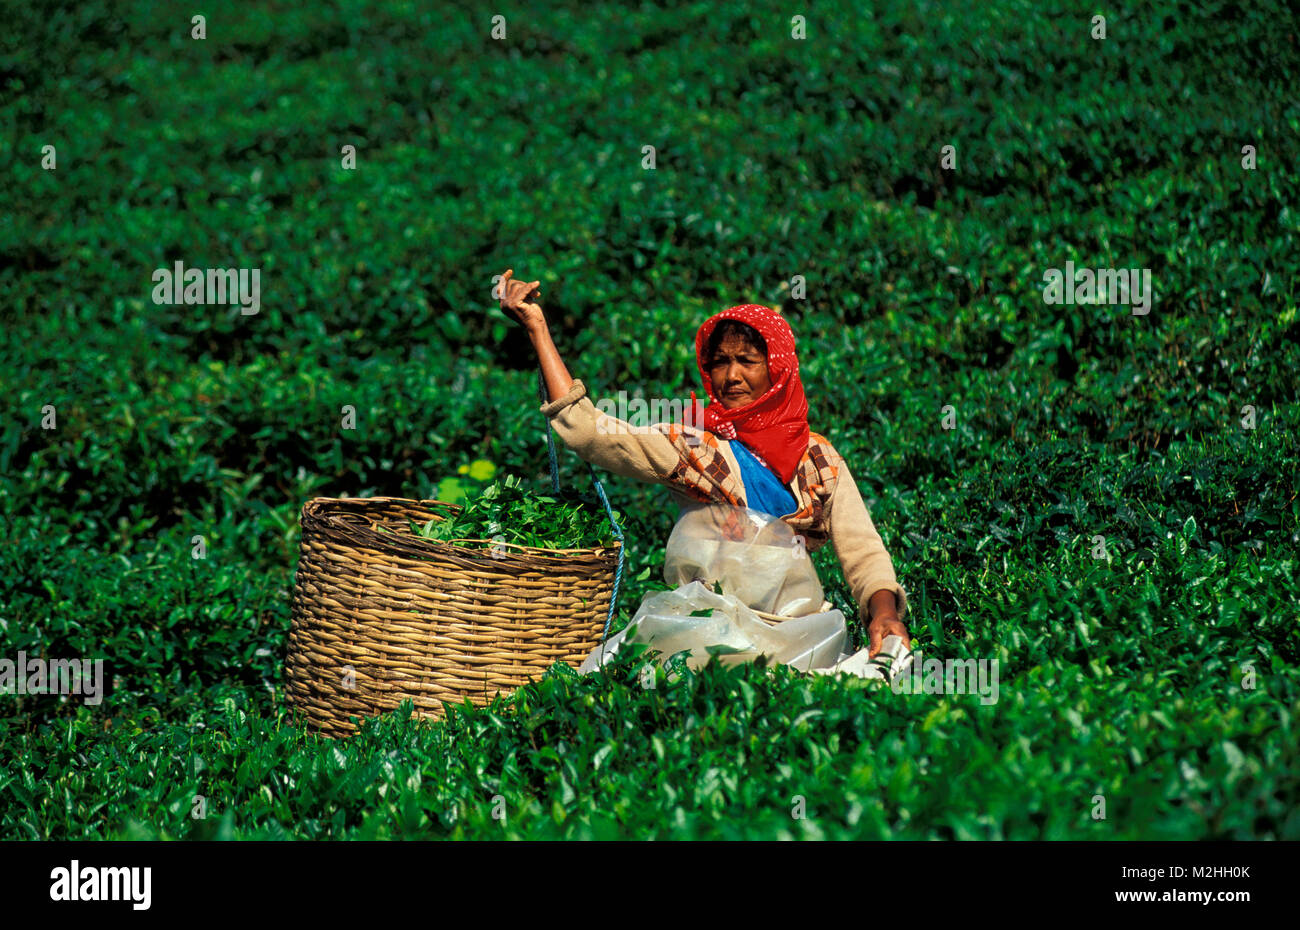 Plantation de thé de bois Chéri, MAURICE Banque D'Images